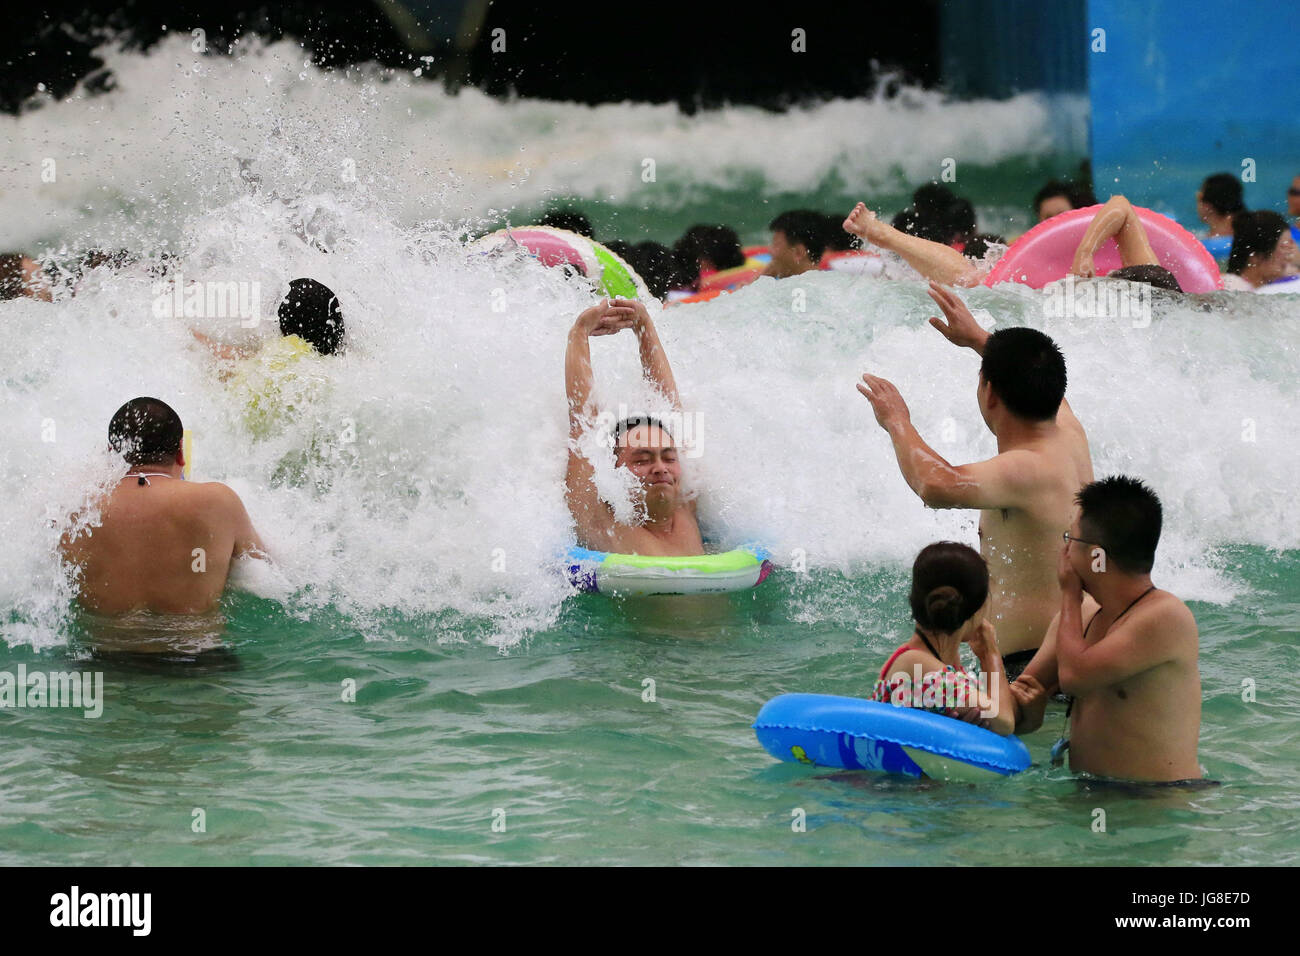 Suining, cinese della provincia di Sichuan. 4 Luglio, 2017. Le persone sperimentano il surf in corrispondenza di una zona di turismo in Daying contea di Suining, a sud-ovest della Cina di provincia di Sichuan, 4 luglio 2017. Credito: Zhong Min/Xinhua/Alamy Live News Foto Stock